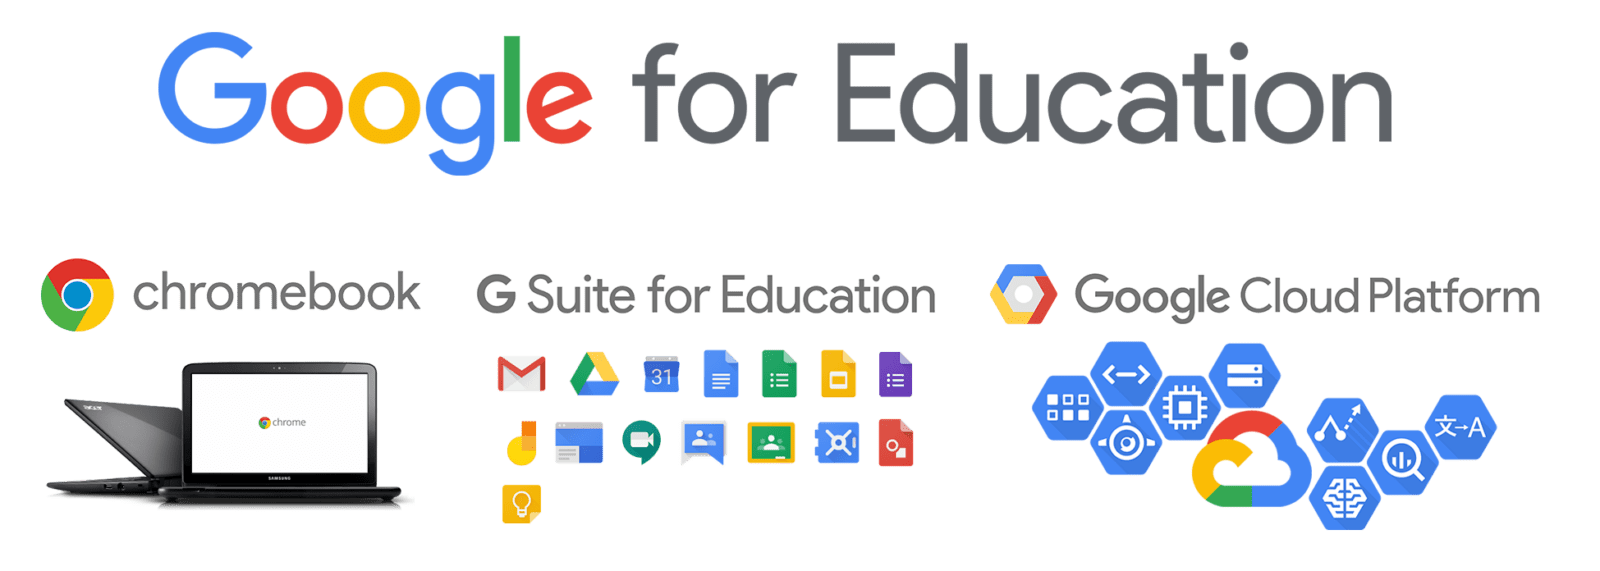 Google for Education パッケージ